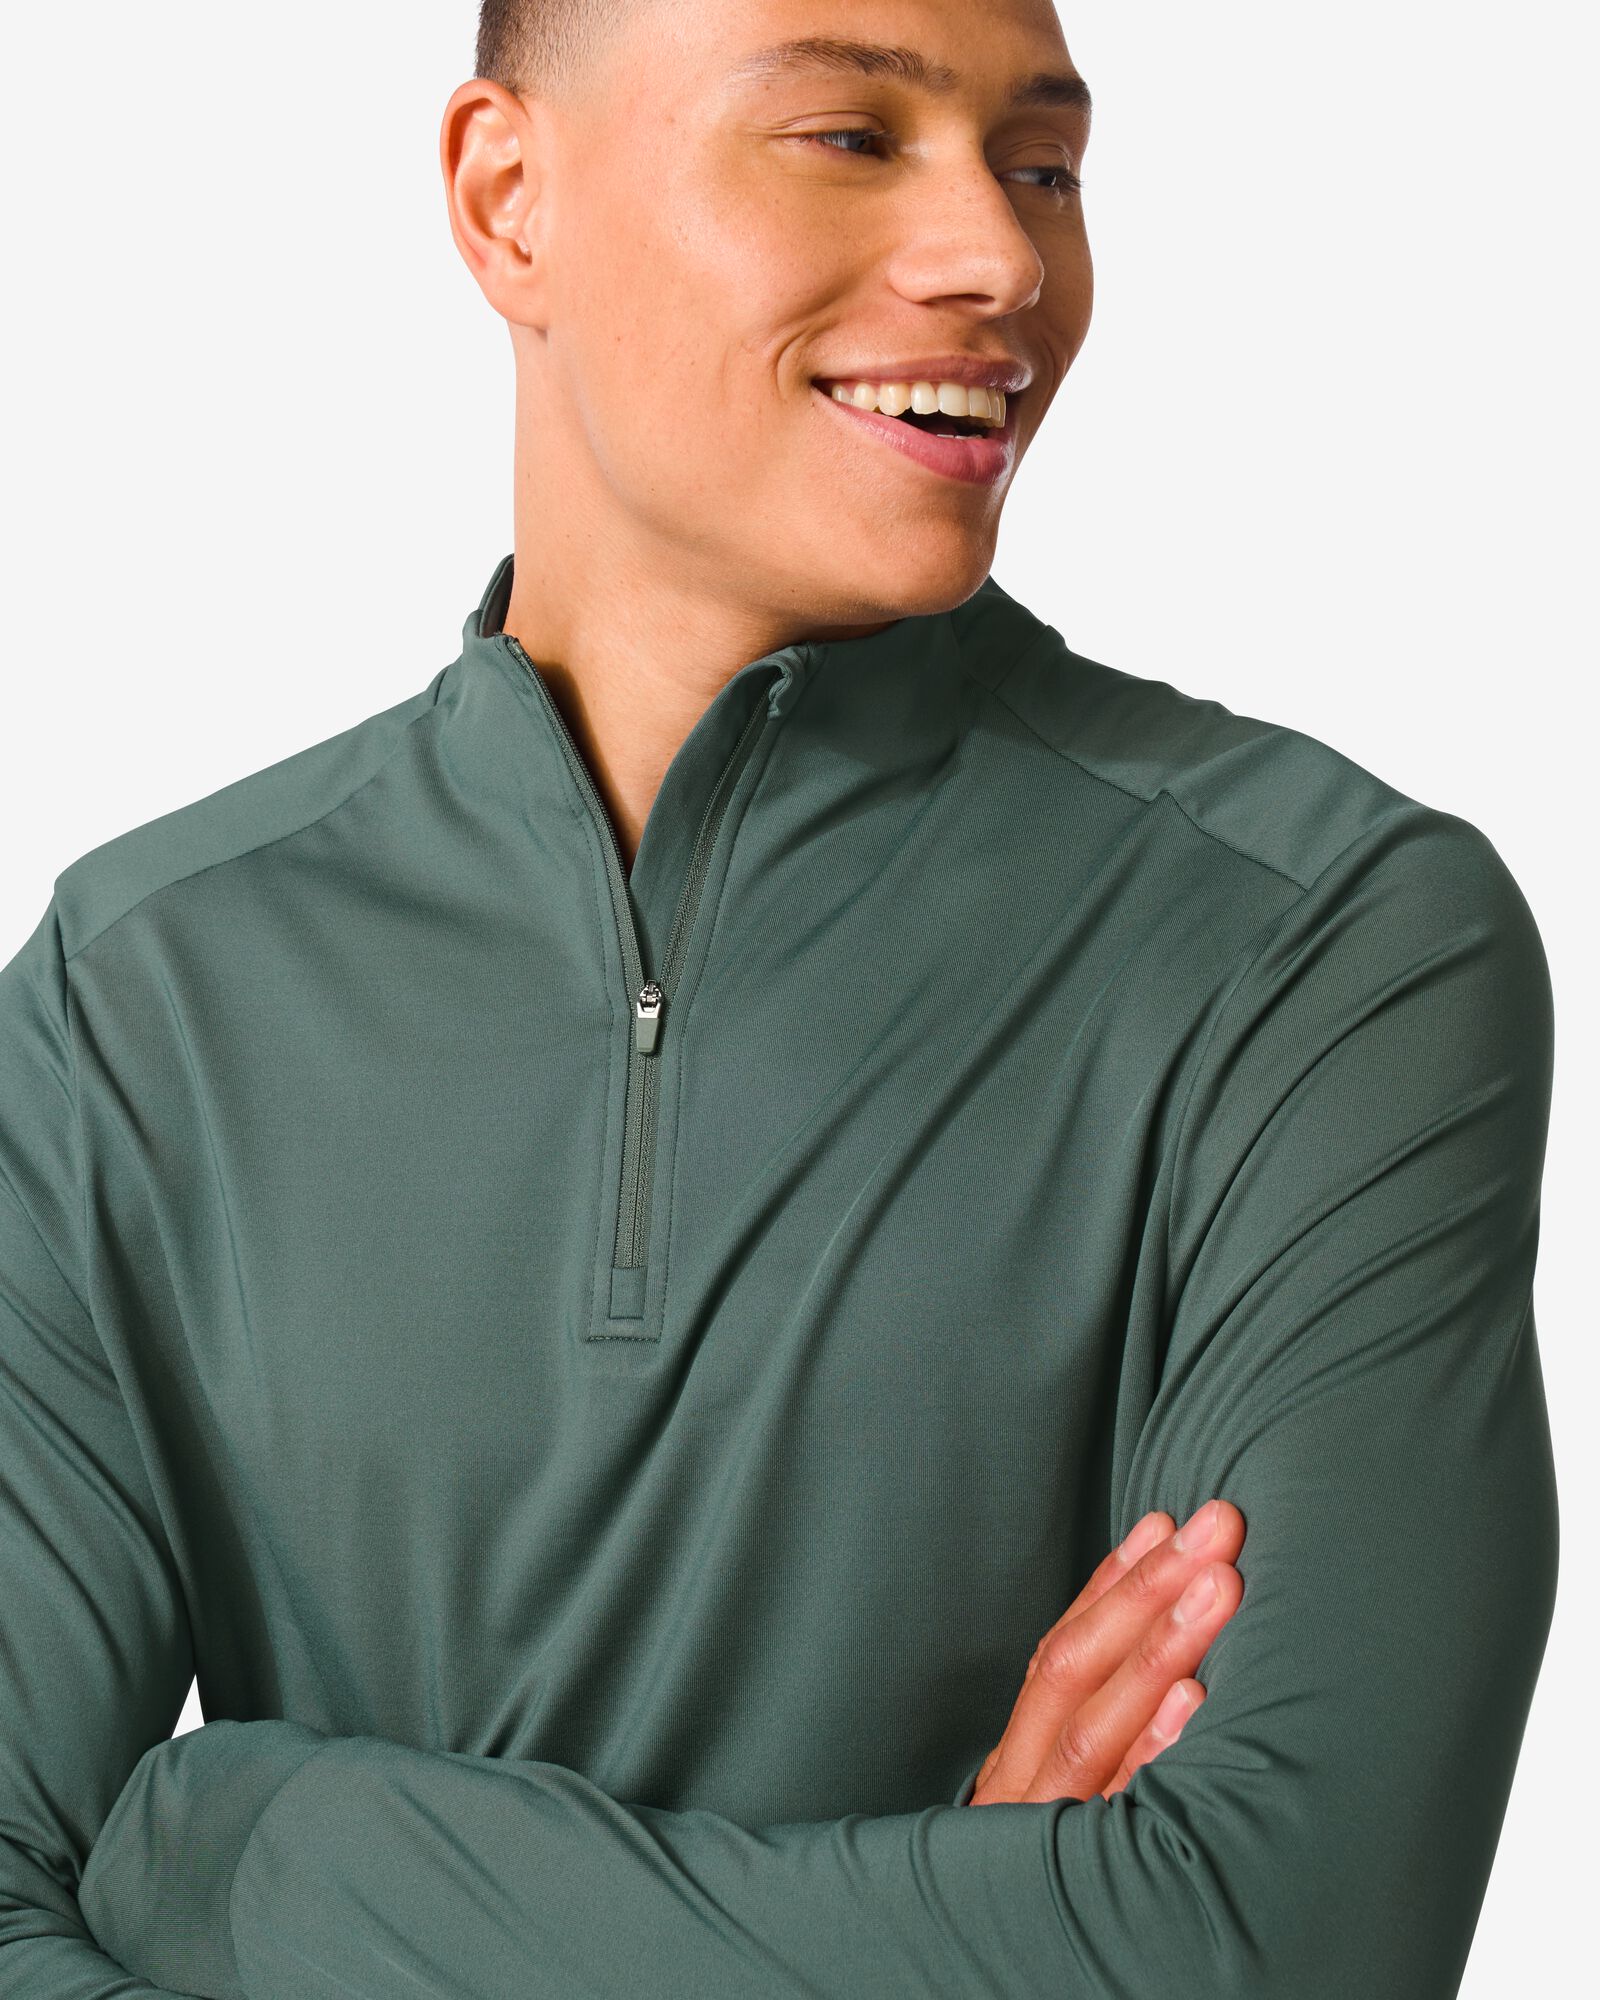 t-shirt sport polaire homme vert vert - 36090212GREEN - HEMA